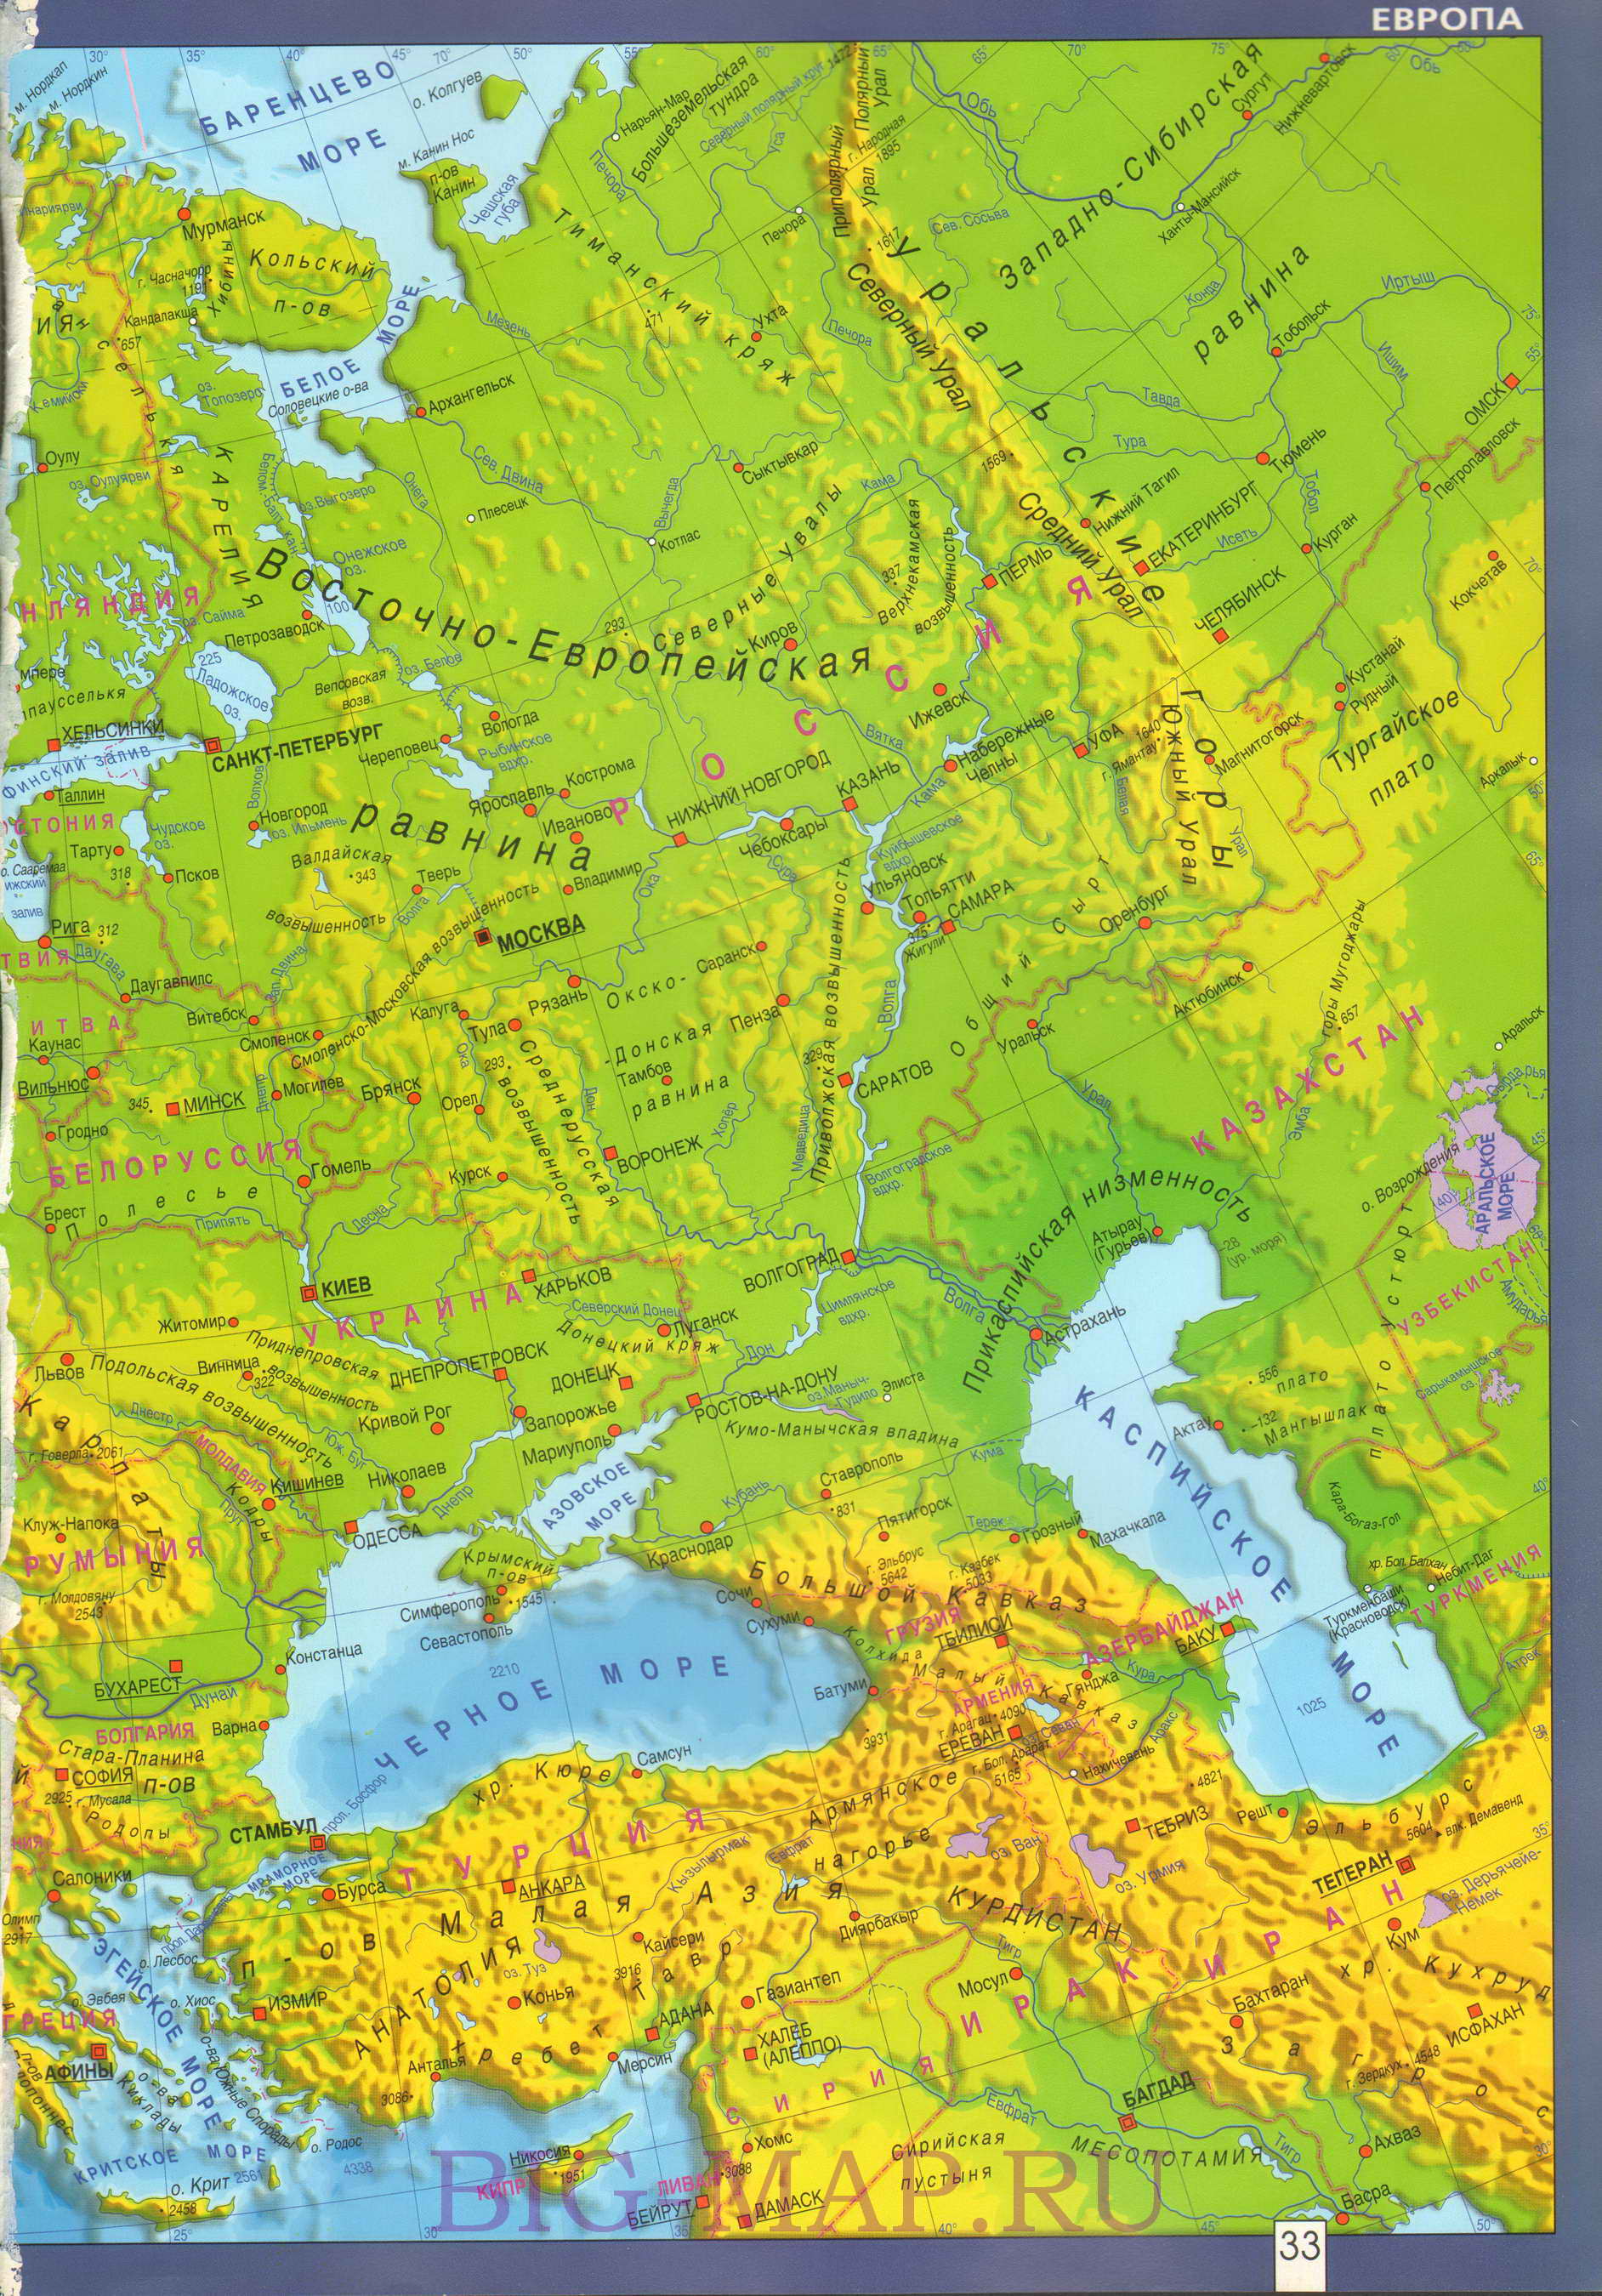  Карта Европы географическая. Подробная географическая карта Европы на русском языке, B0 - 